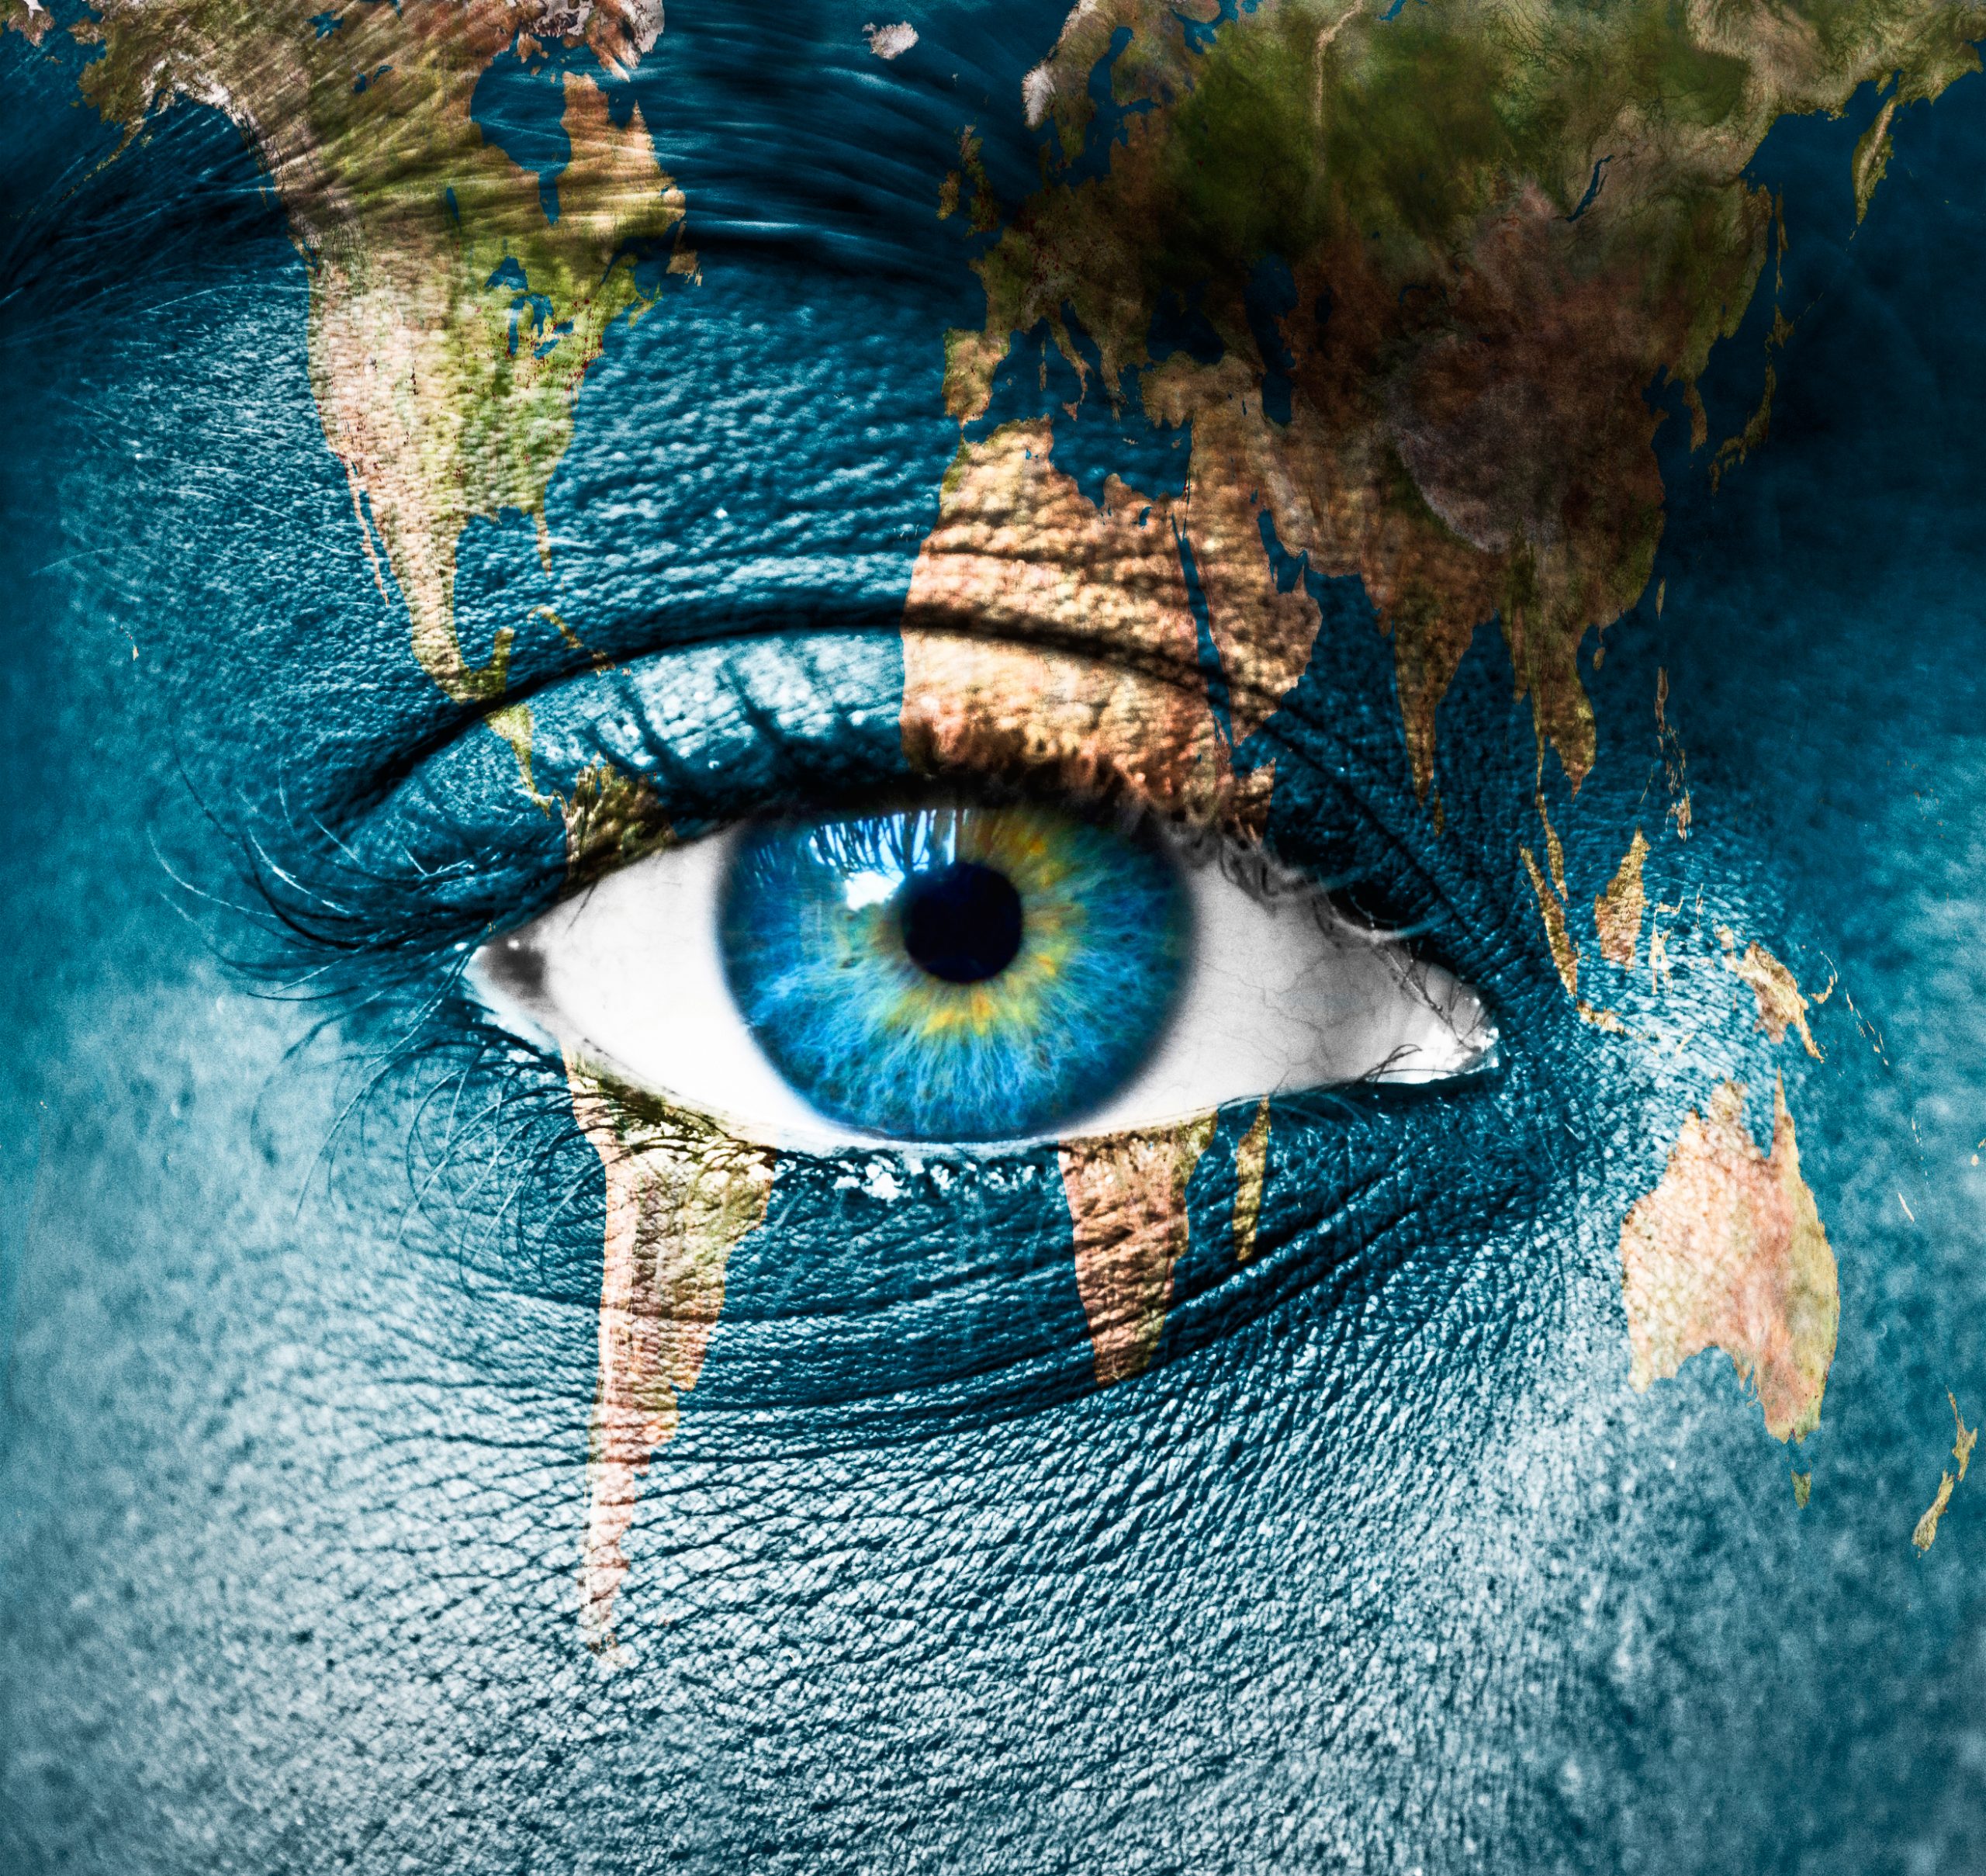 Planet Earth and human eye